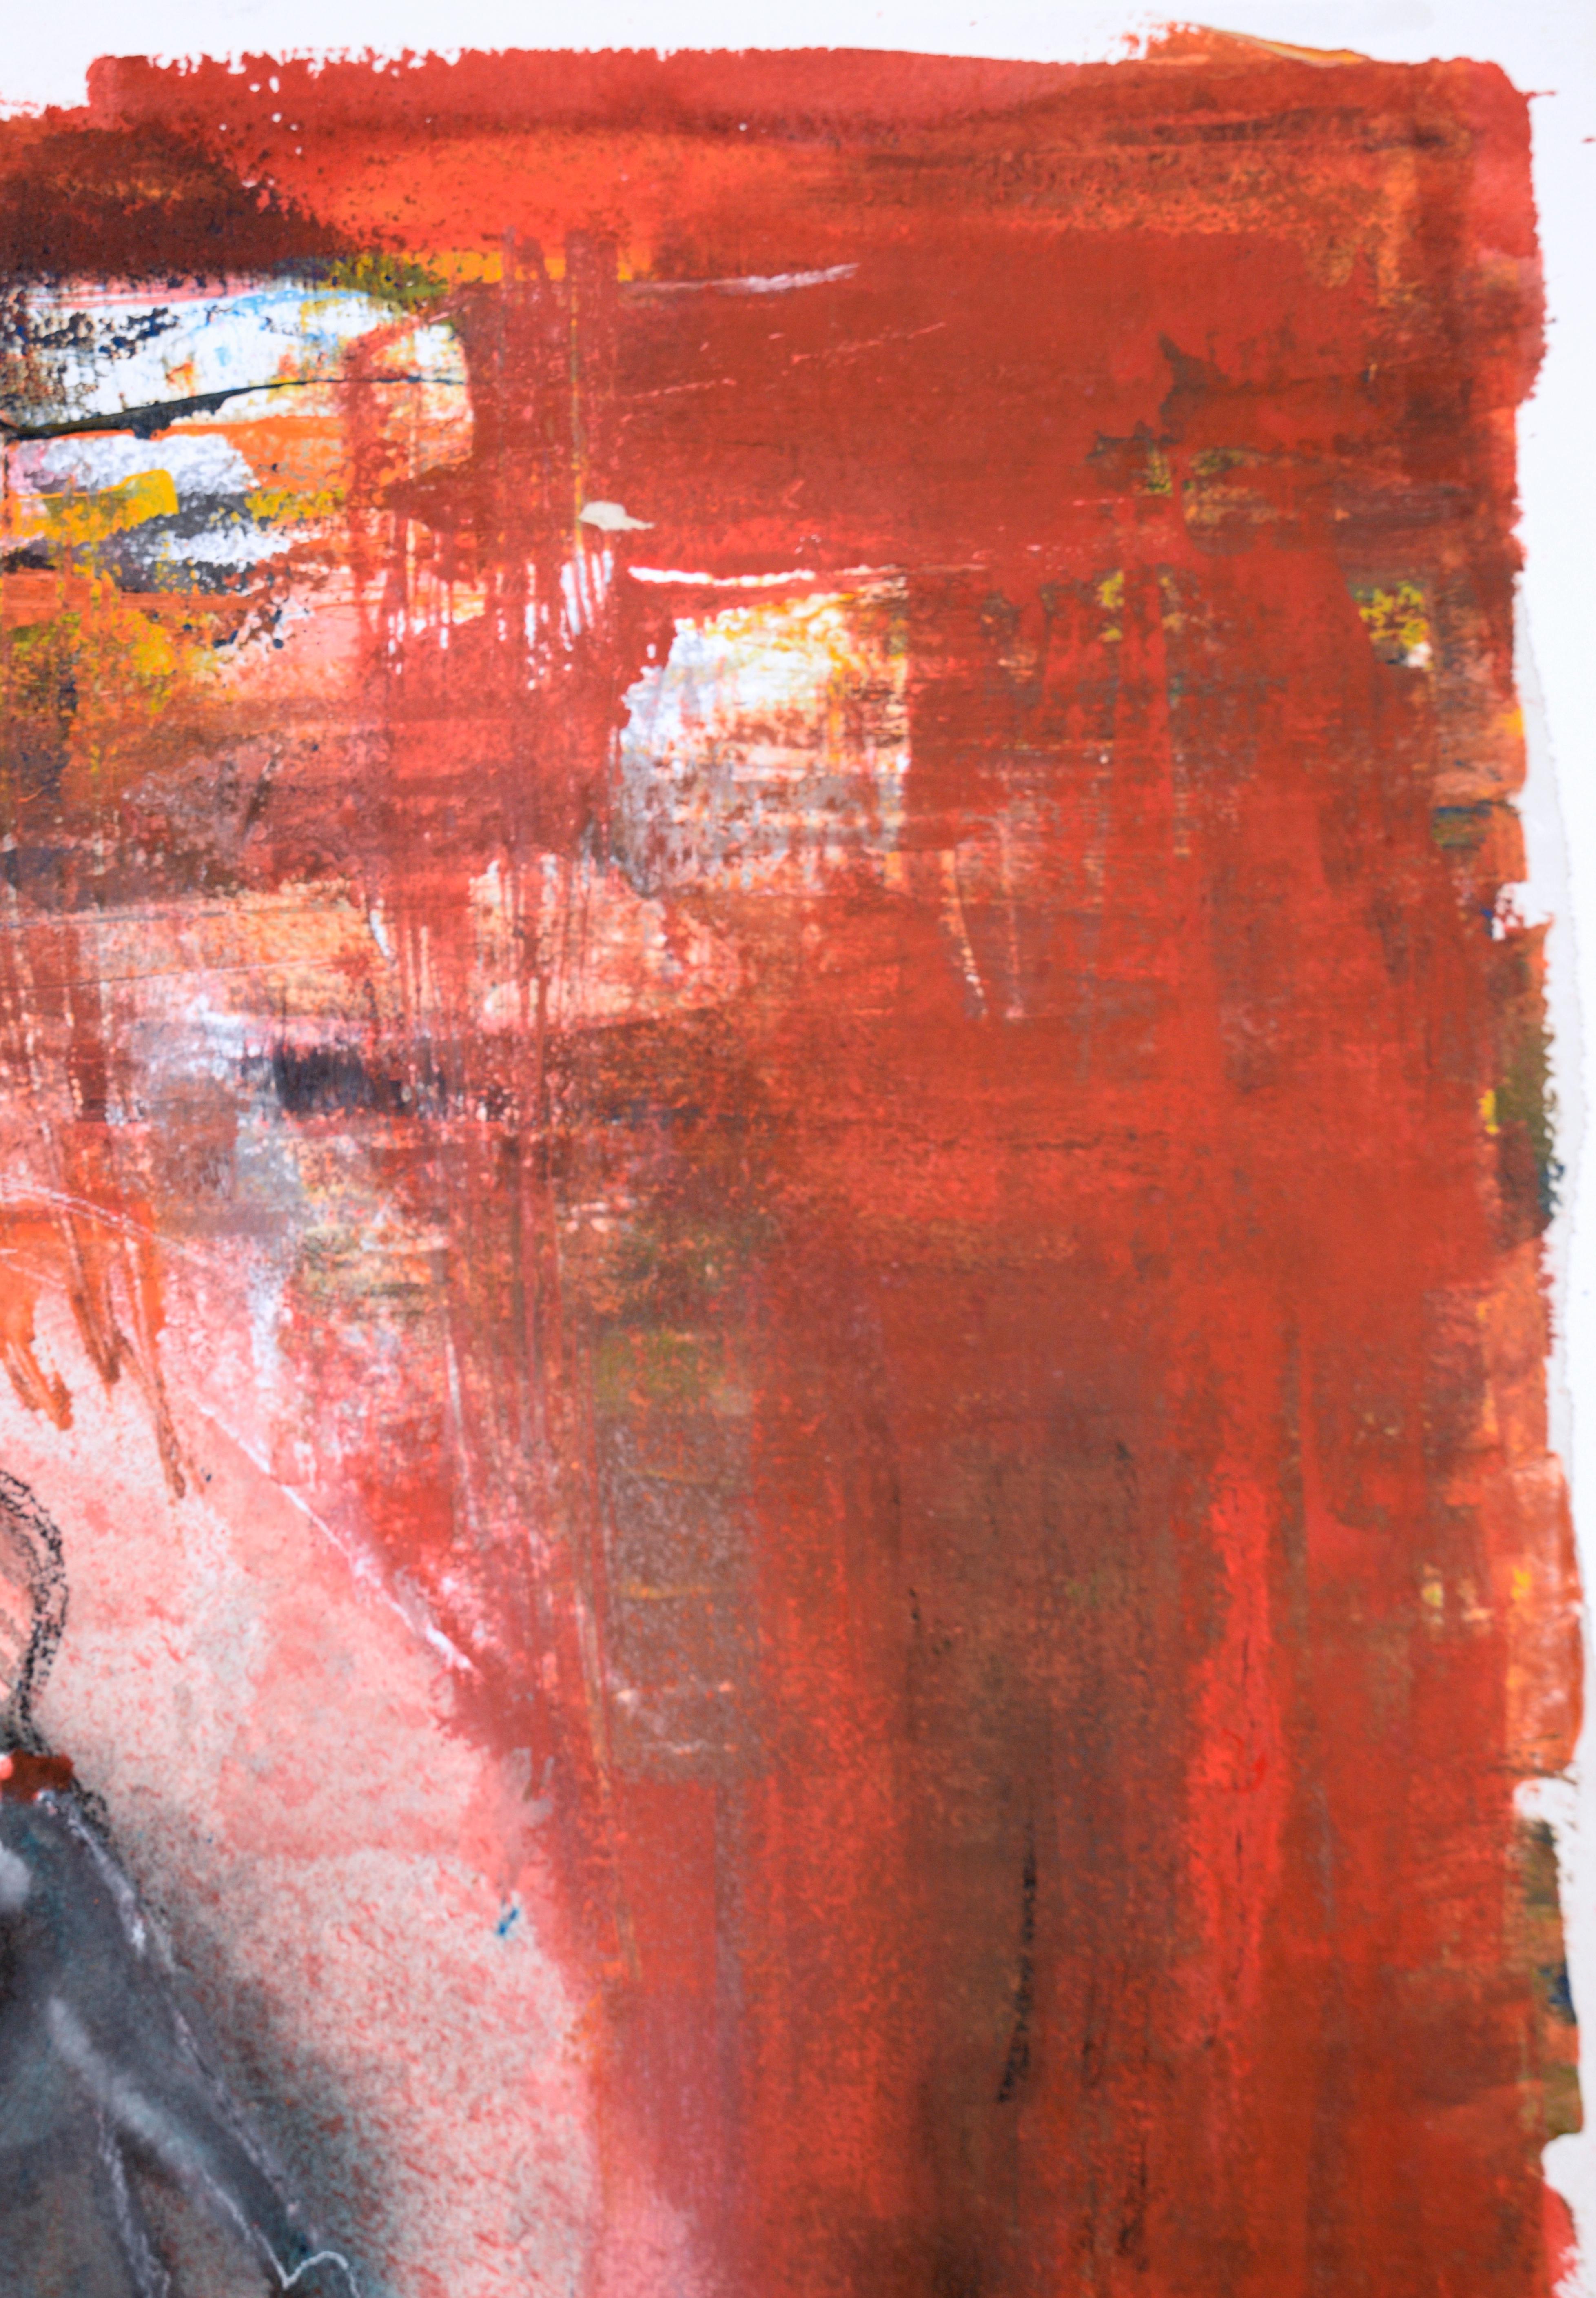 Der Mann am Draht - Abstrakter Expressionismus

Ein lebhaftes abstraktes Gemälde in intensivem Mohnrot, das einen Mann in schwarzer Krawatte darstellt, der mit einem Regenschirm auf einem Drahtseil läuft, von dem in Kalifornien lebenden Künstler